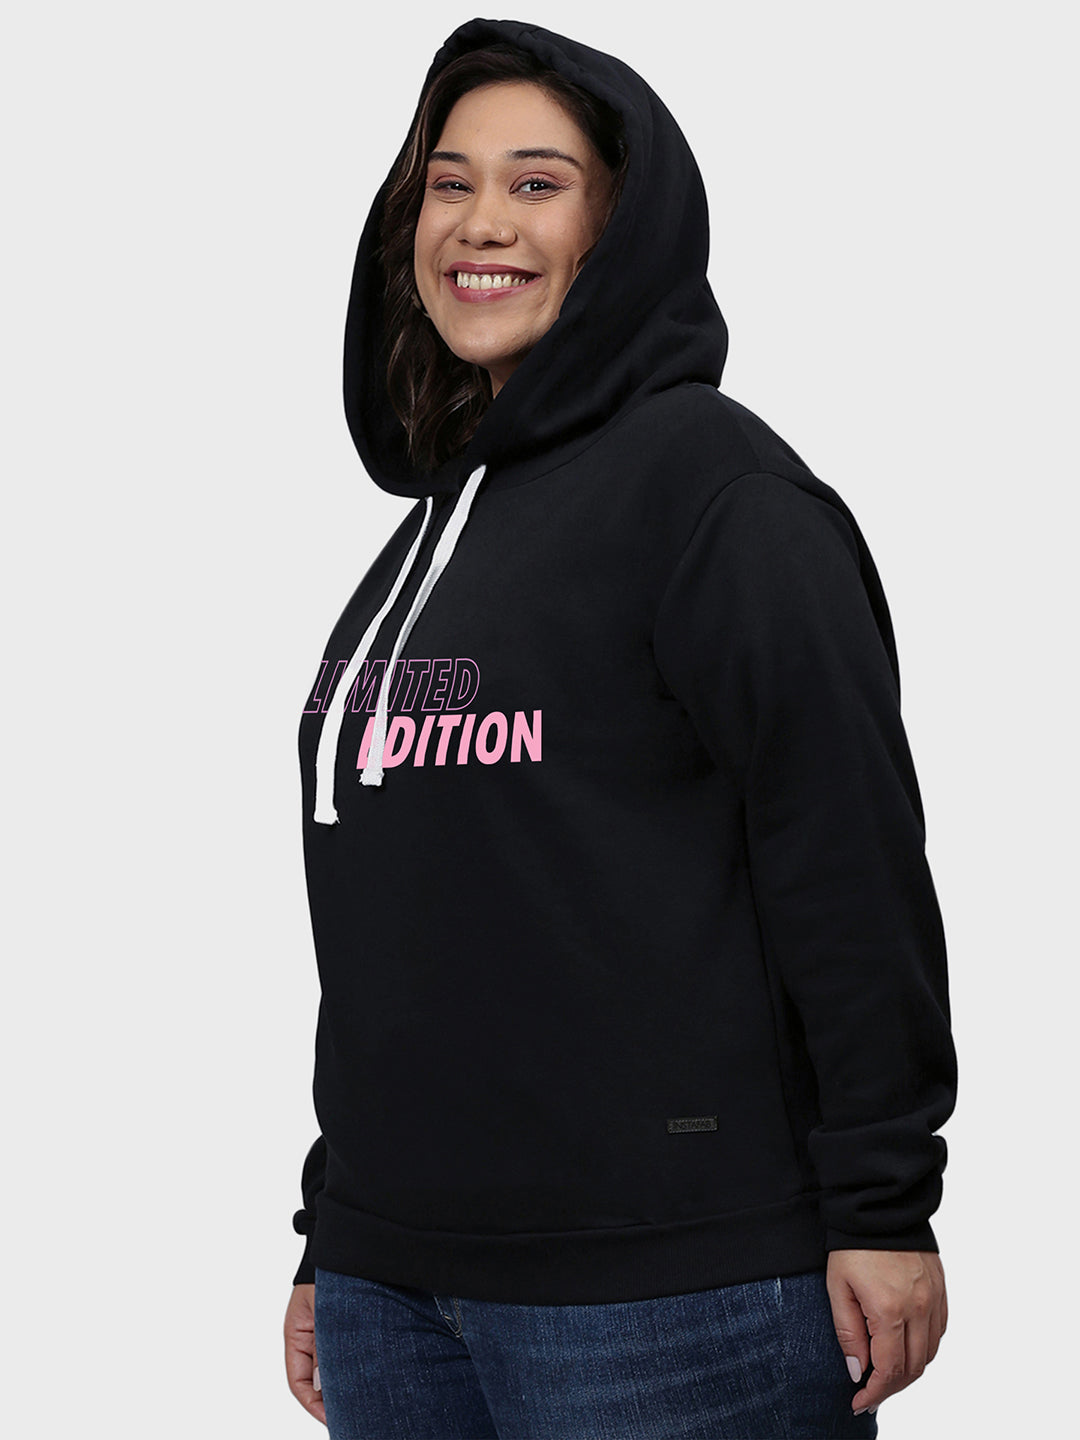 Typographic Sweatshirt With Hood